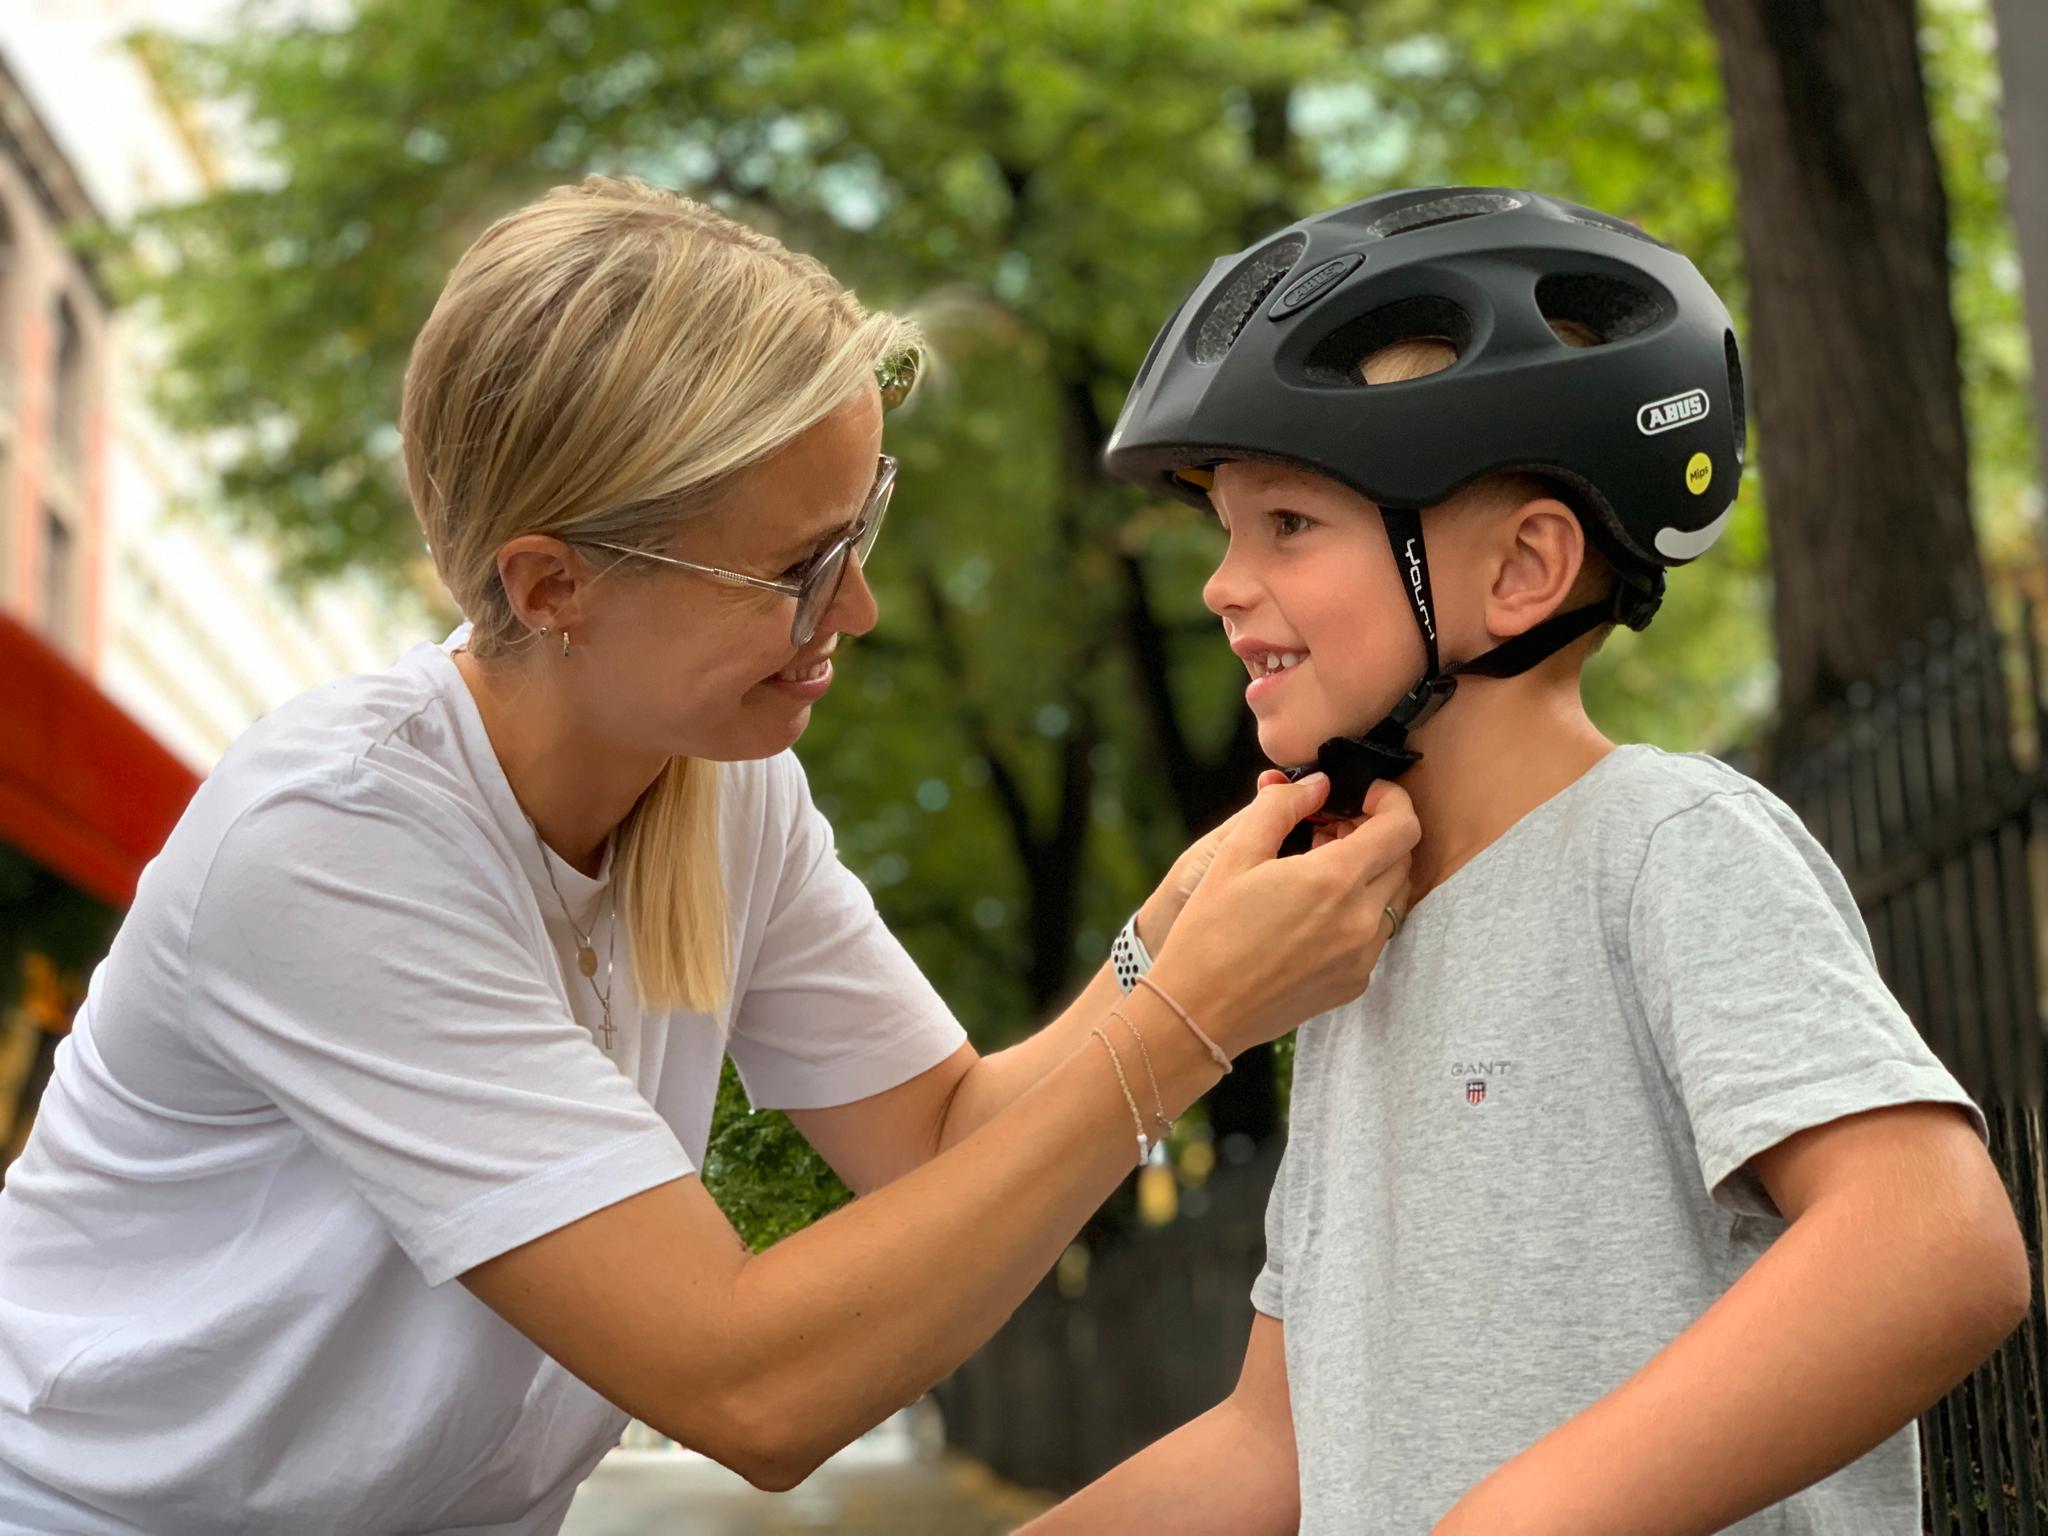 Det er viktig at sykkelhjelmen prøves på barnet før kjøp for å sikre best passform og at den er lett og behagelig å ha på. 